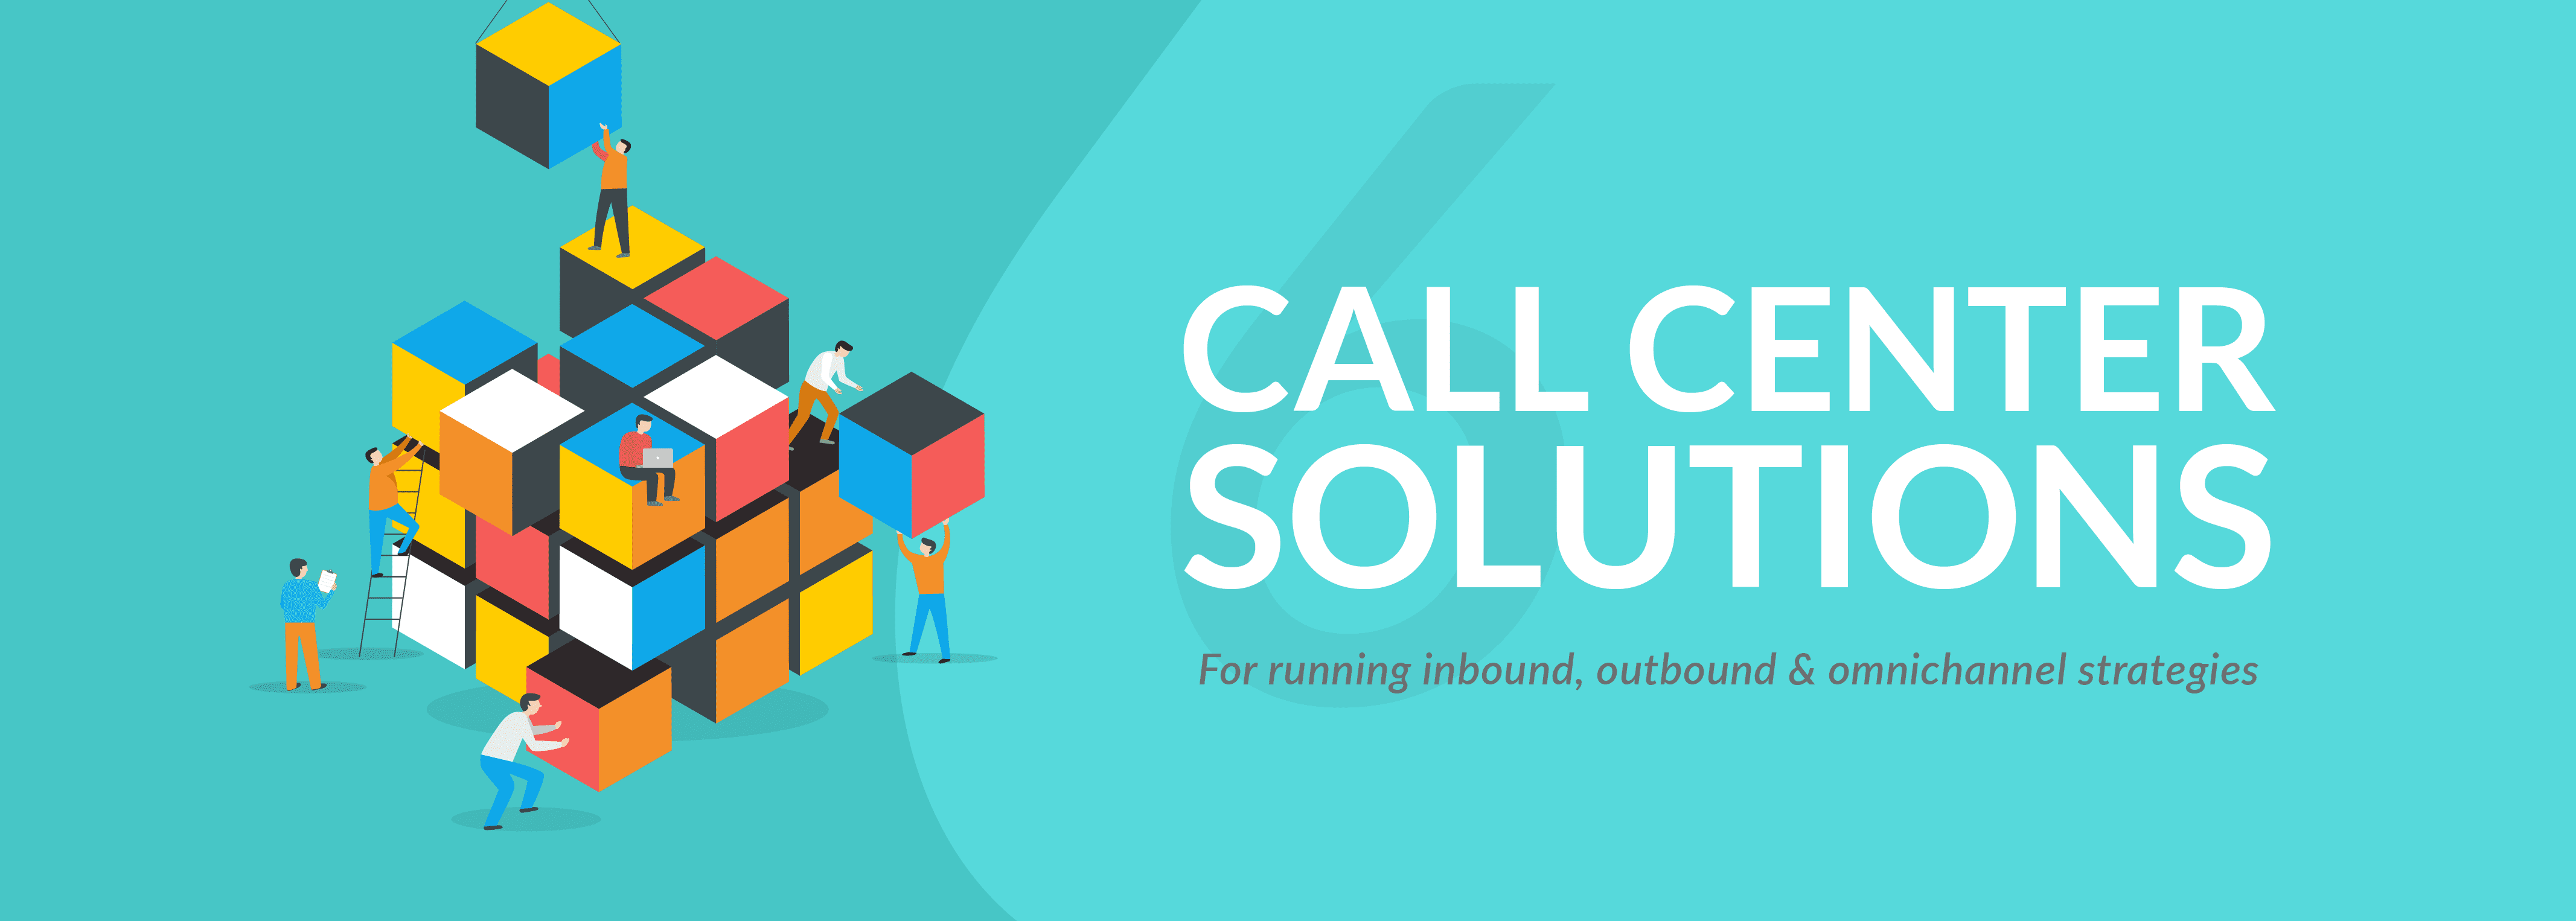 call center software, inbound call center, customer service